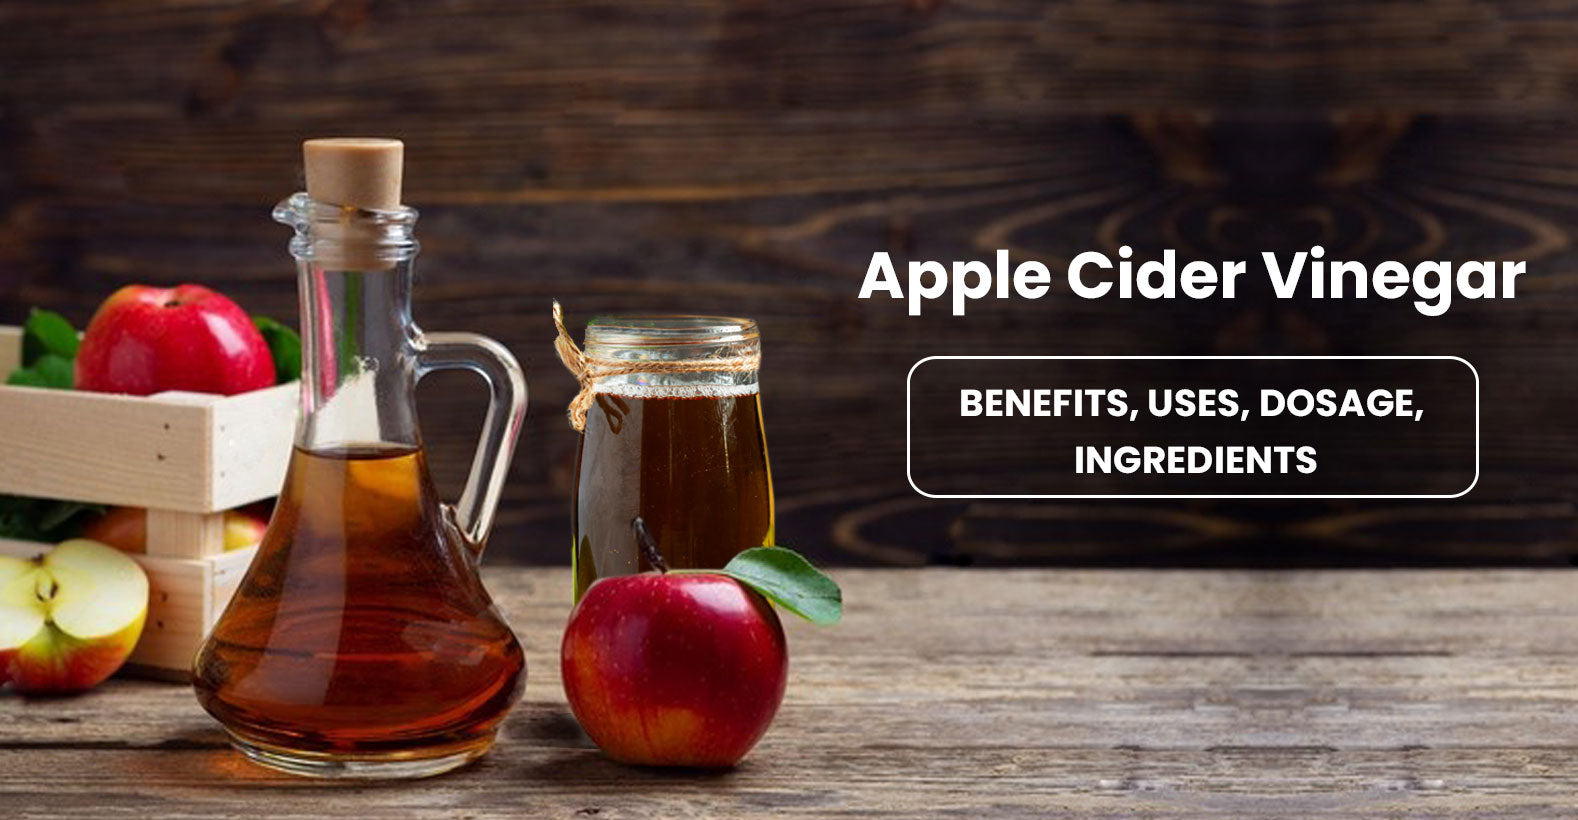 Apple Cider Vinegar: Benefits, Uses, Ingredients, and Dosage